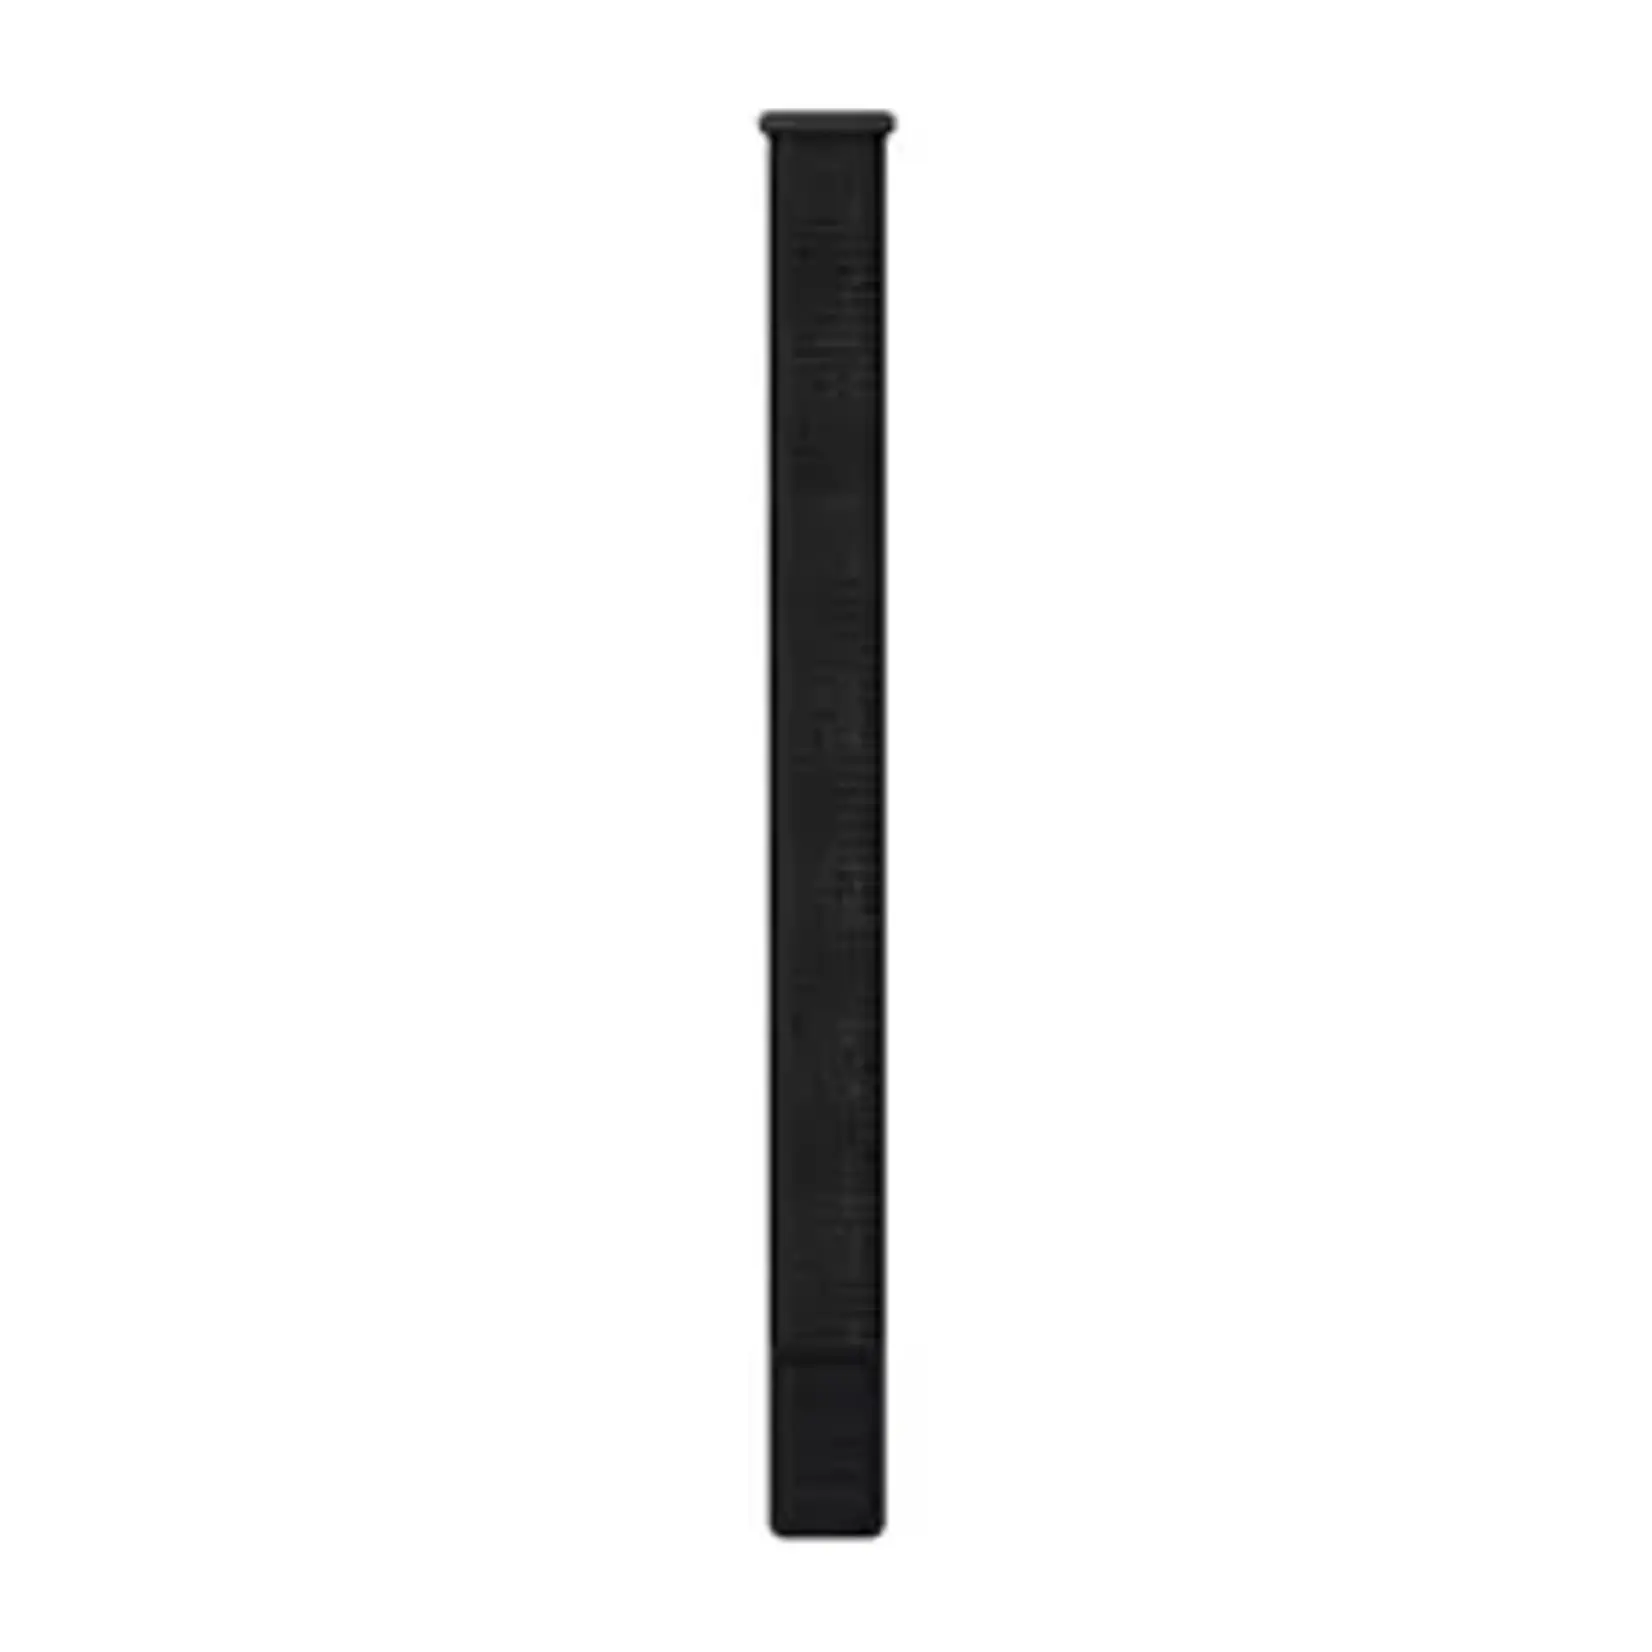 Garmin Garmin ultrafit 20mm nylon polsband, zwart 010-13306-00